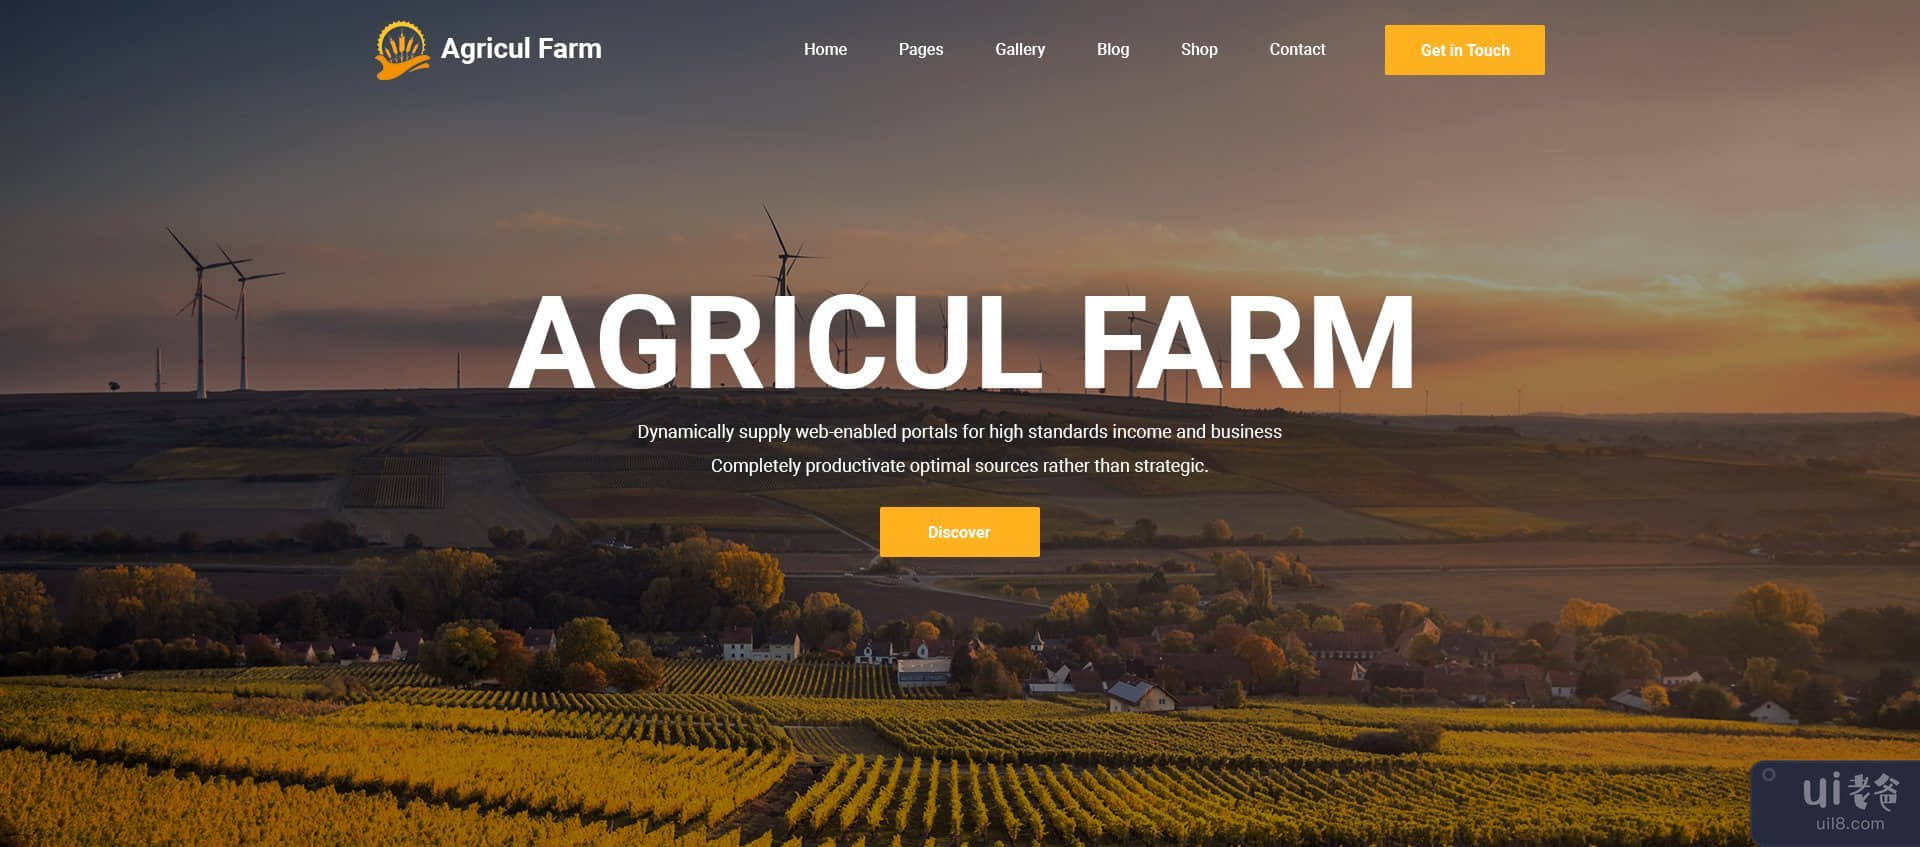 AgriculFarm - 农业和有机食品 PSD 模板(AgriculFarm - Agriculture & Organic Food PSD Template)插图